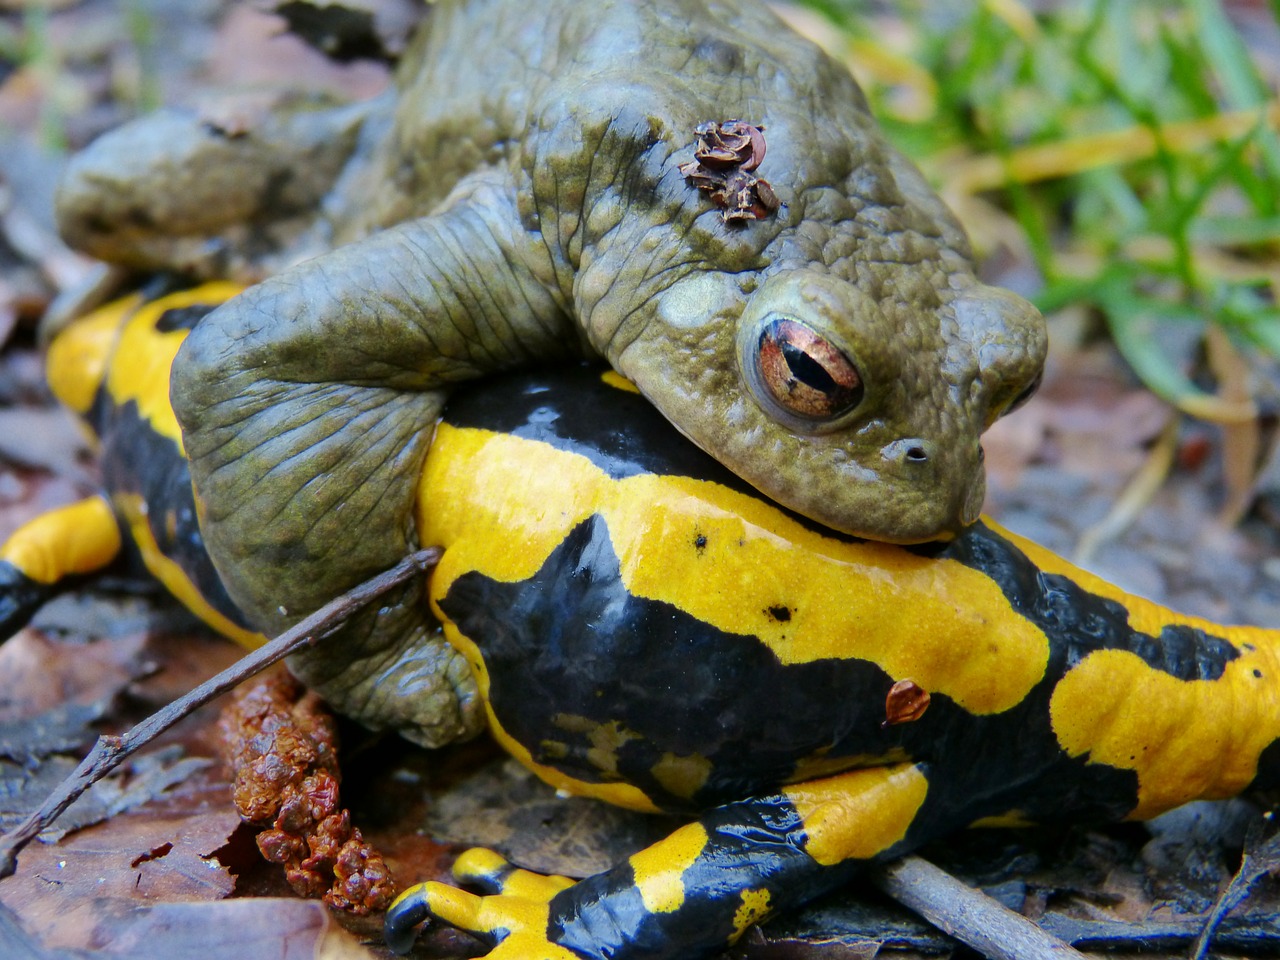 common toad fire salamander mating season free photo